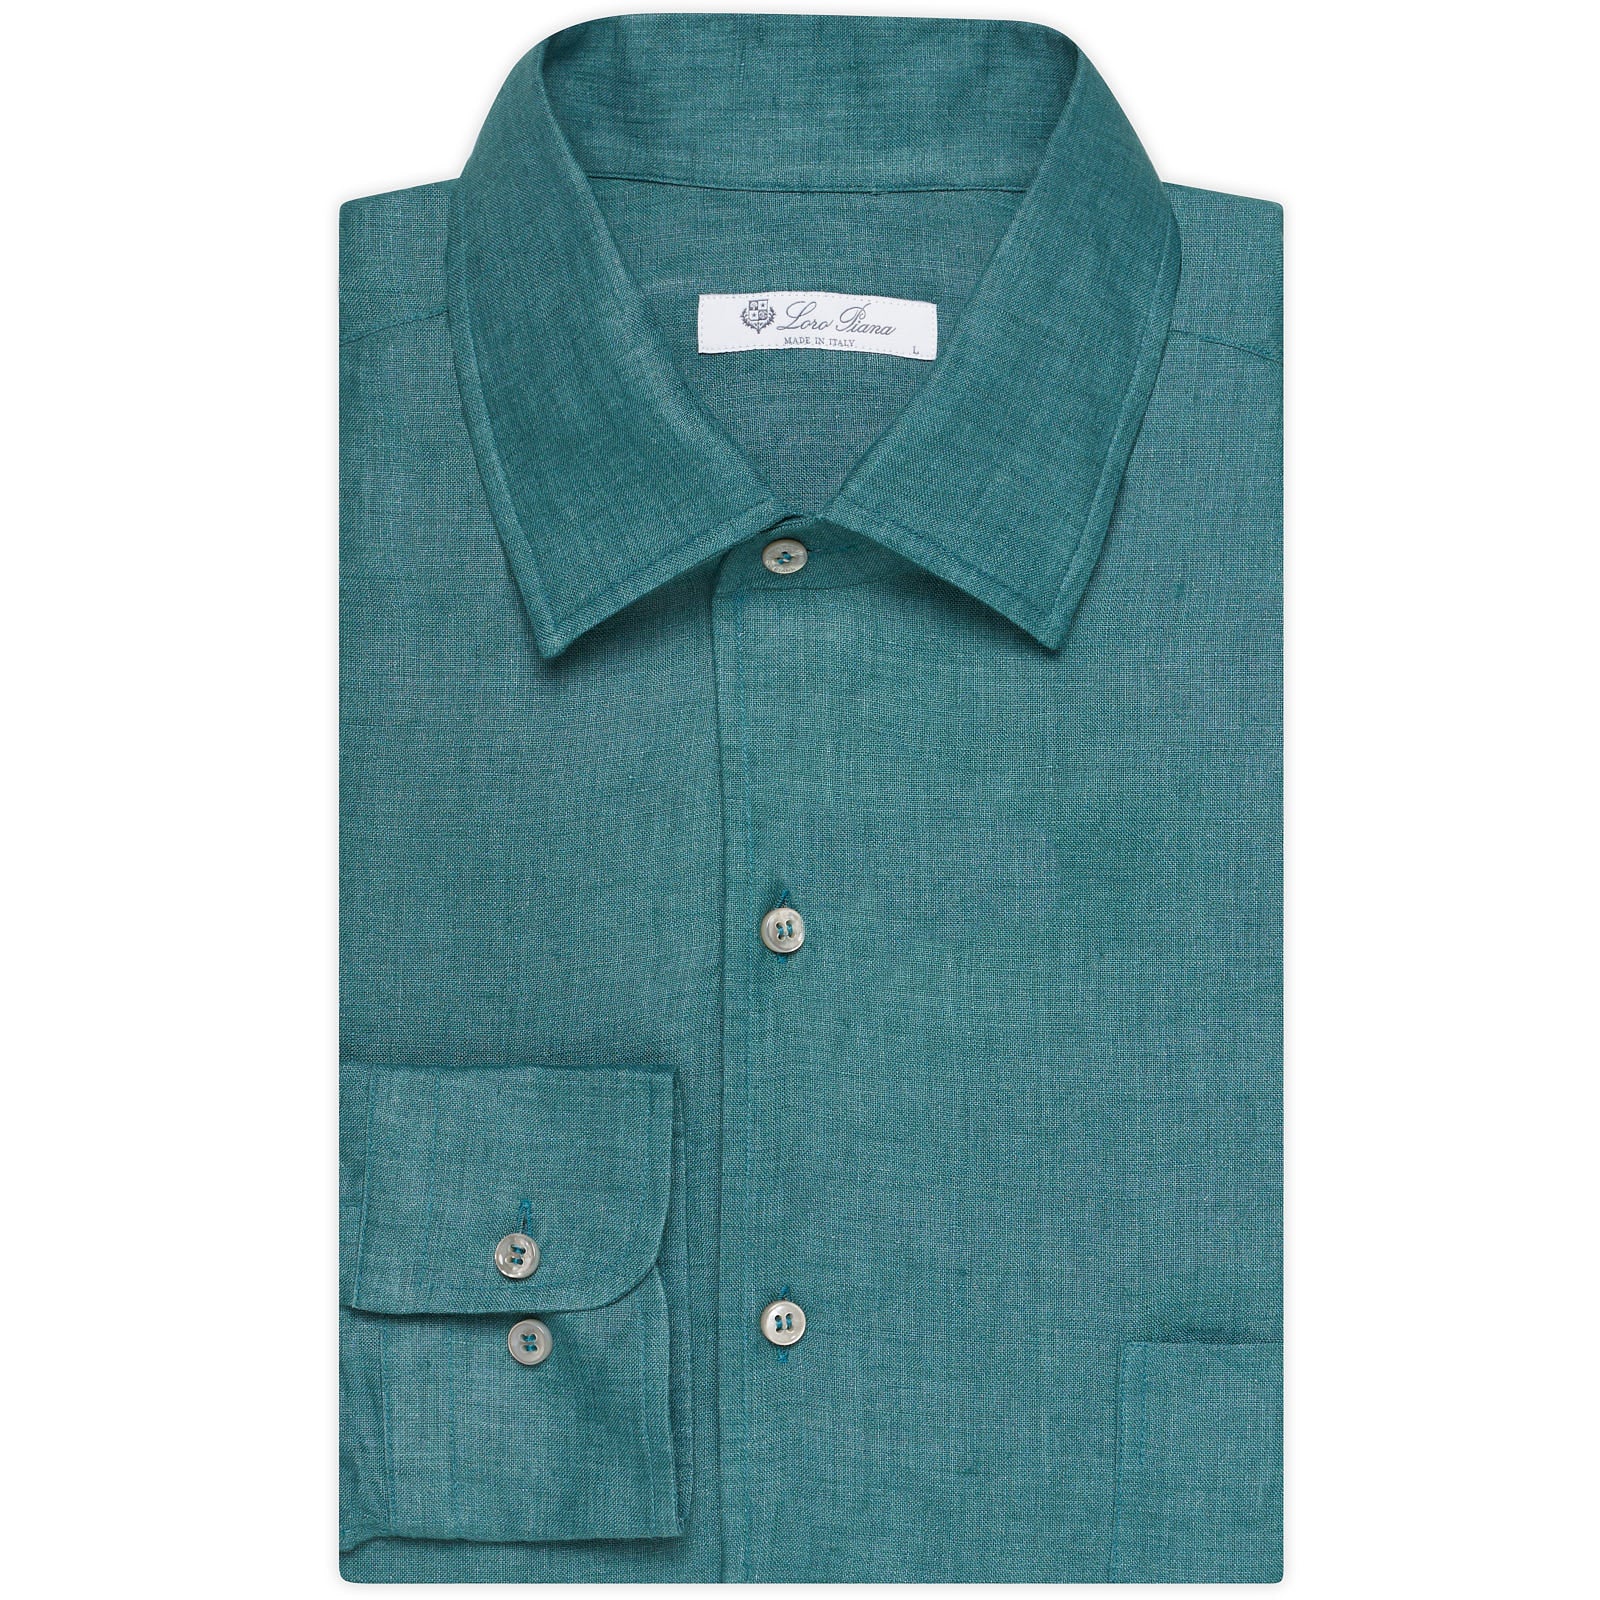 LORO PIANA "André" Green Linen 1 Pocket Classic Shirt NEW US L